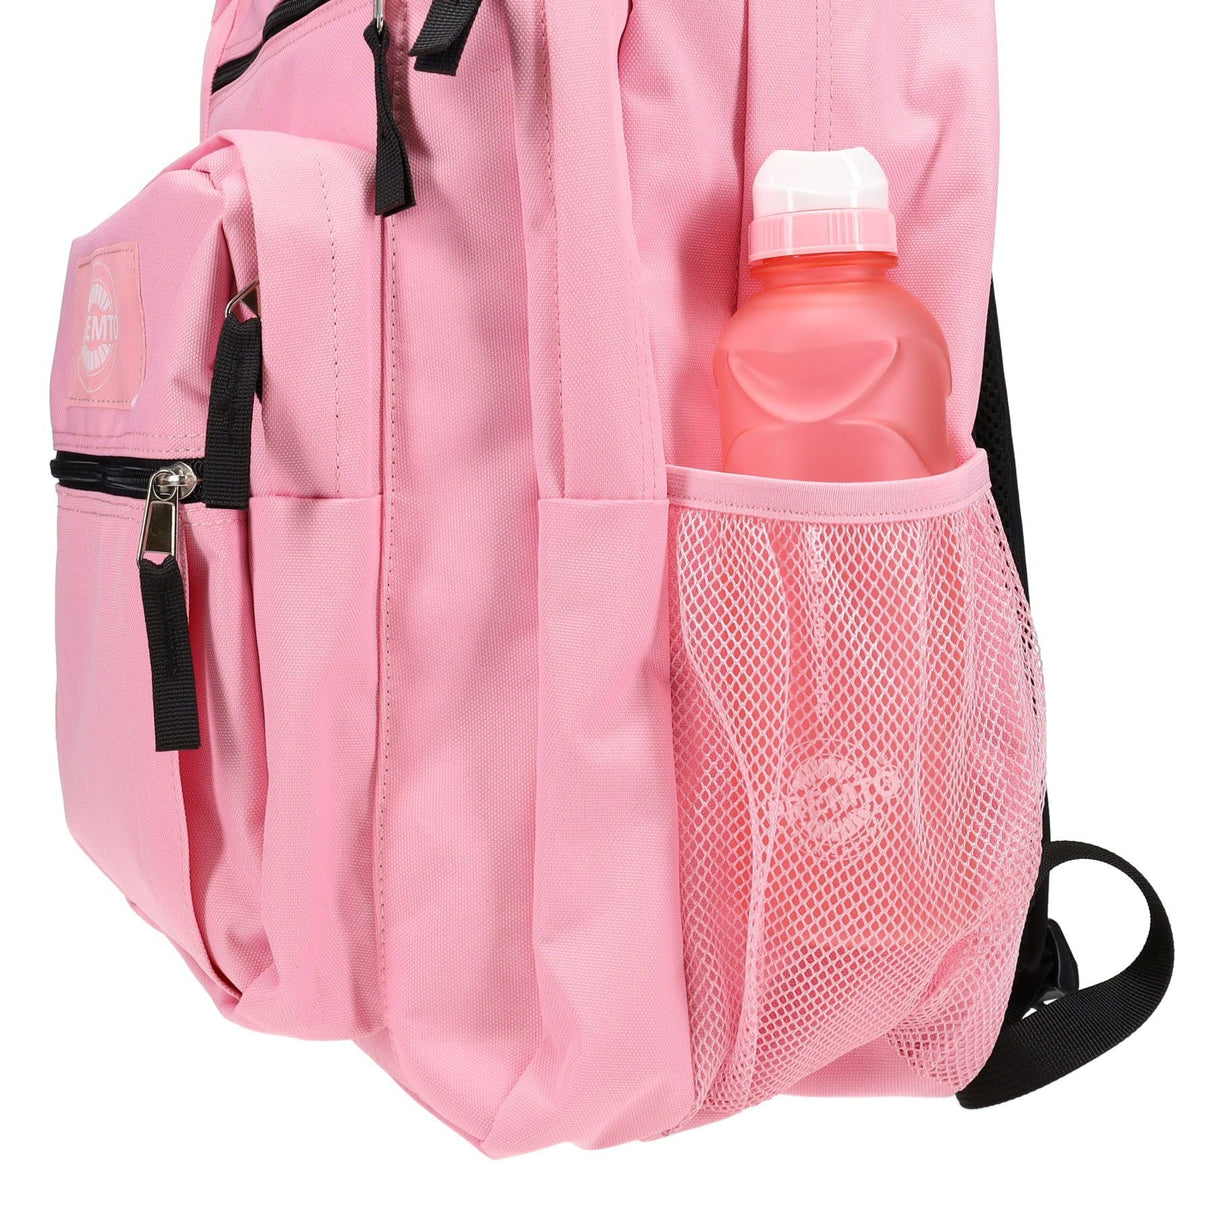 Premto 34L Backpack - Pink Sherbet-Backpacks-Premto|StationeryShop.co.uk